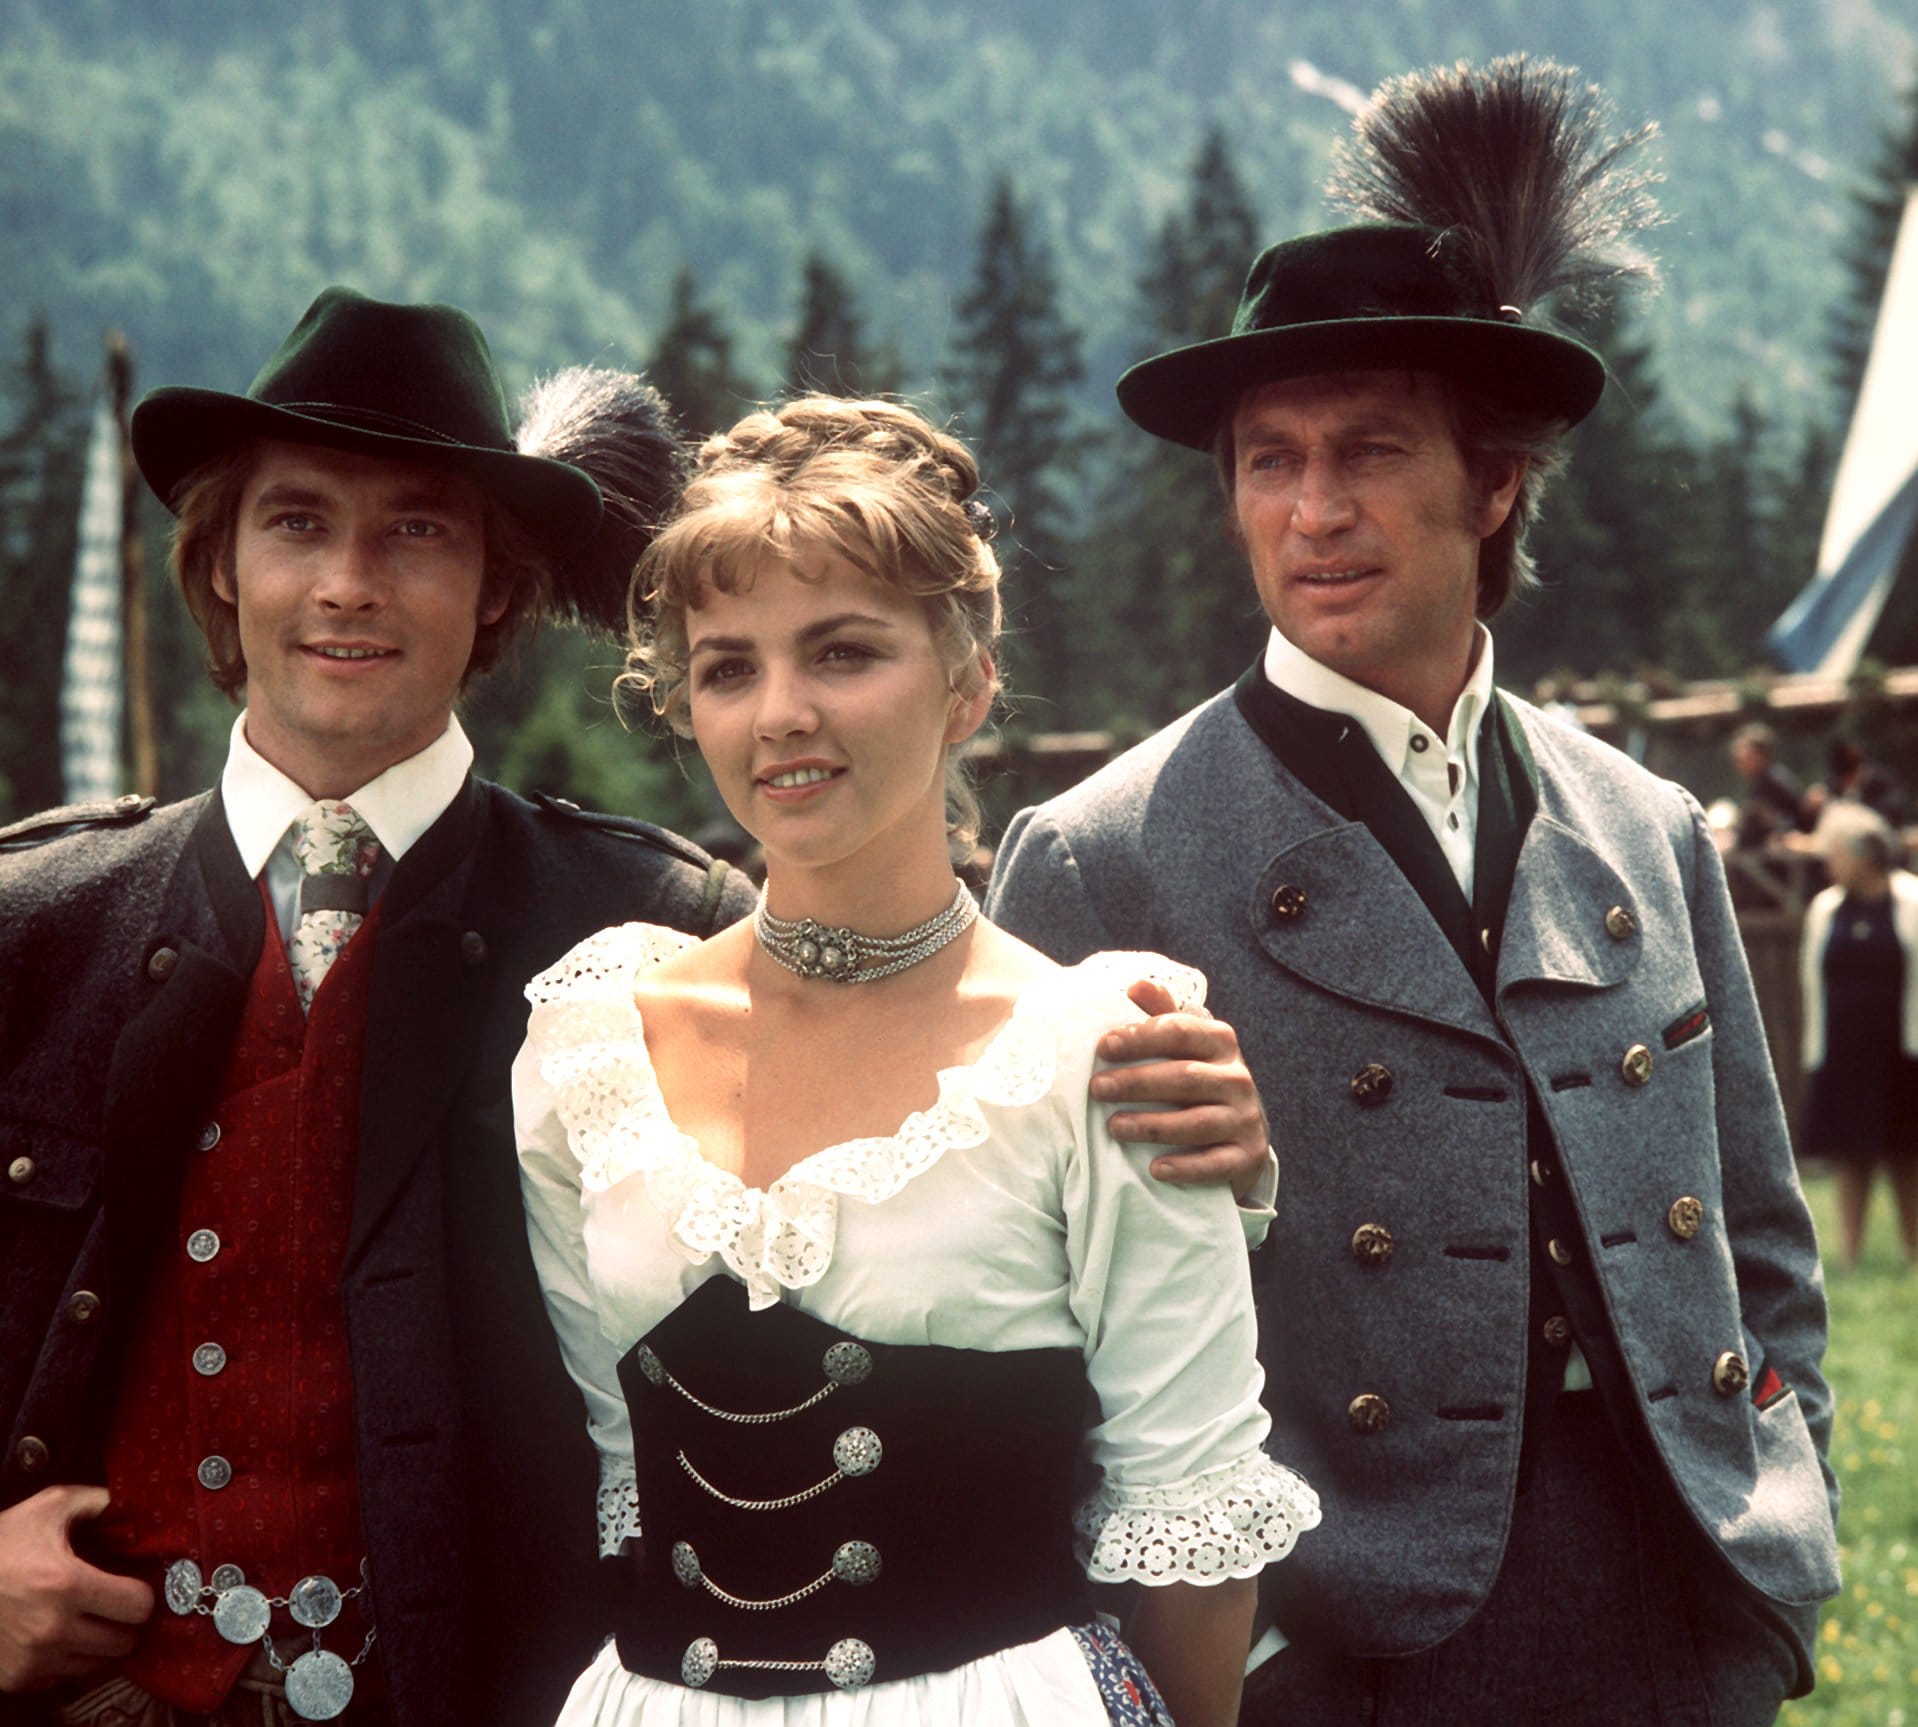 1974 stand Siegfried Rauch zusammen mit seinen Filmpartnern Gerlinde Döberl und Alexander Stephan für "Der Jäger vom Fall" vor der Kamera.